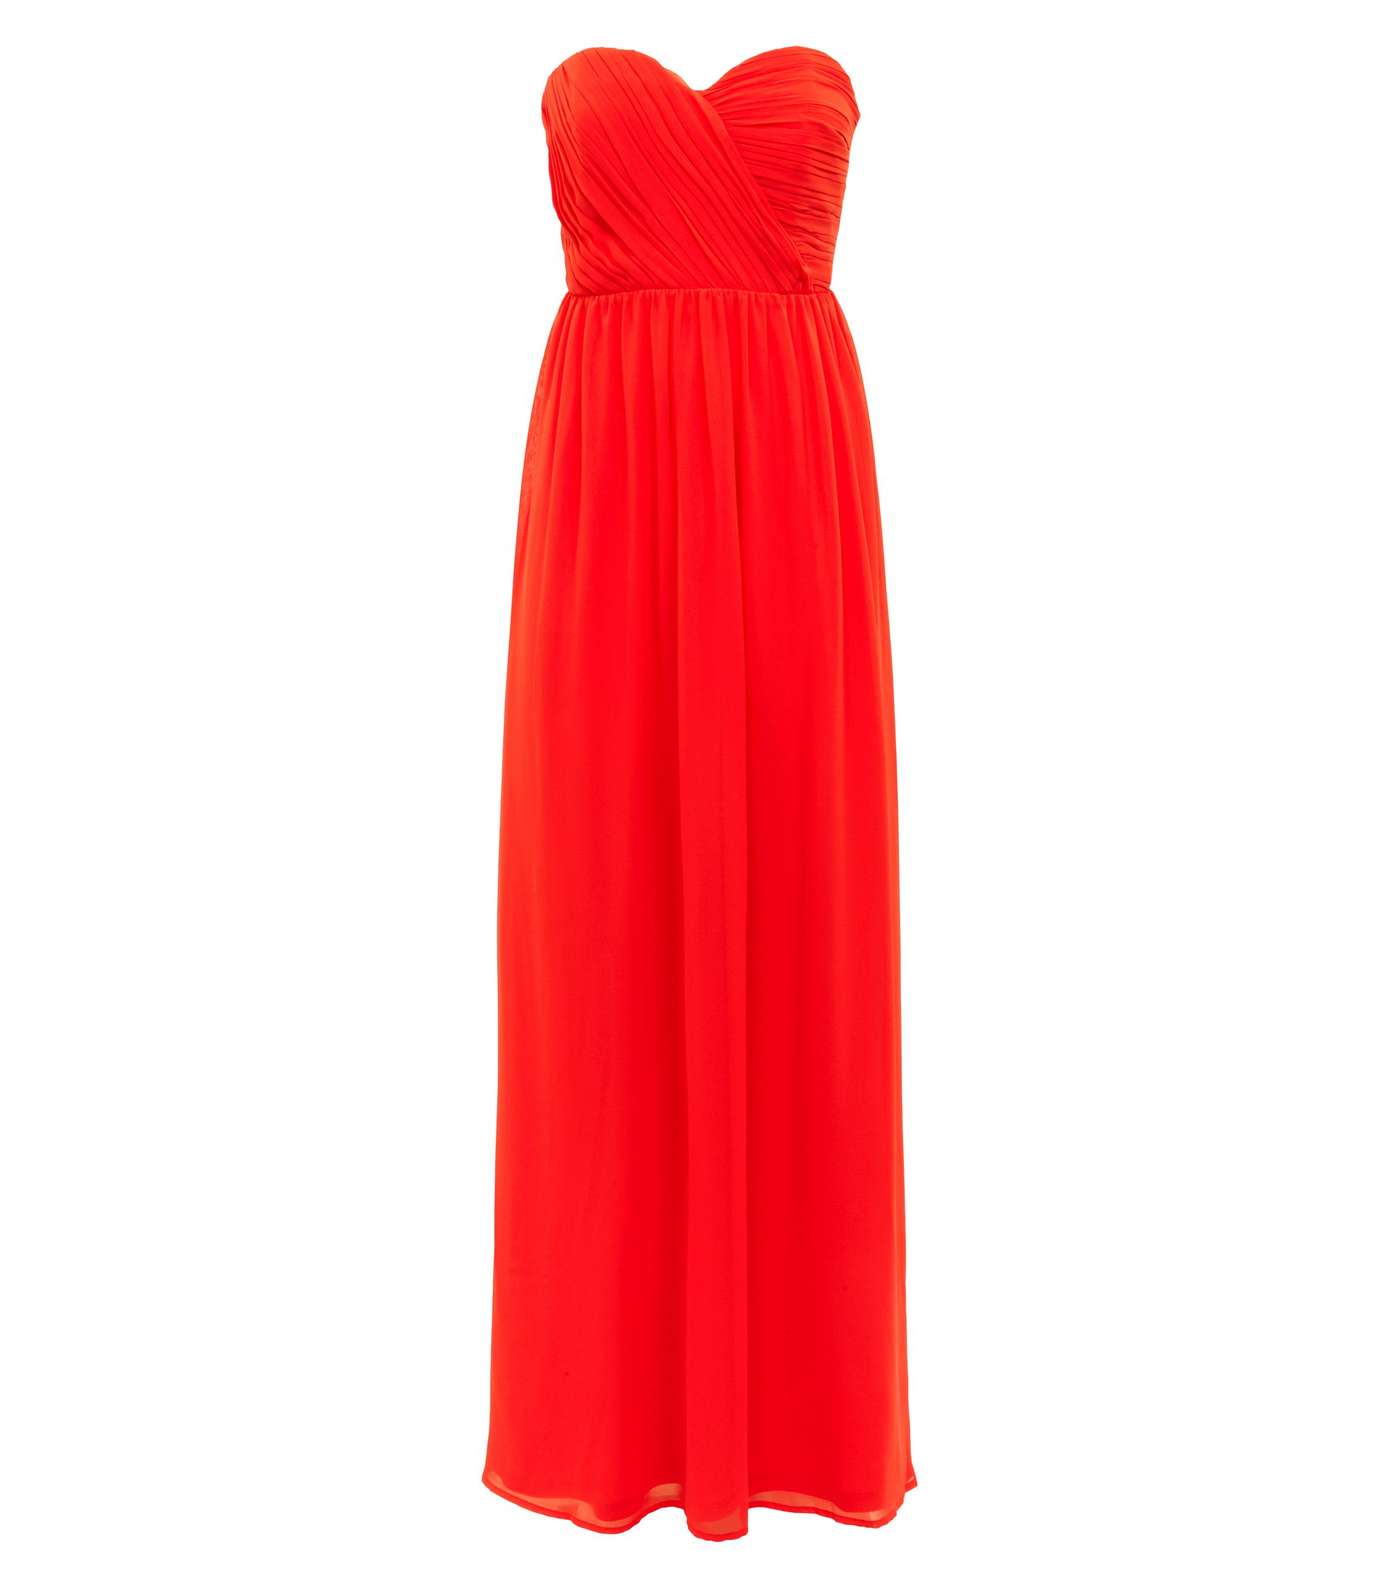 Red Chiffon Strapless Maxi Dress Image 3